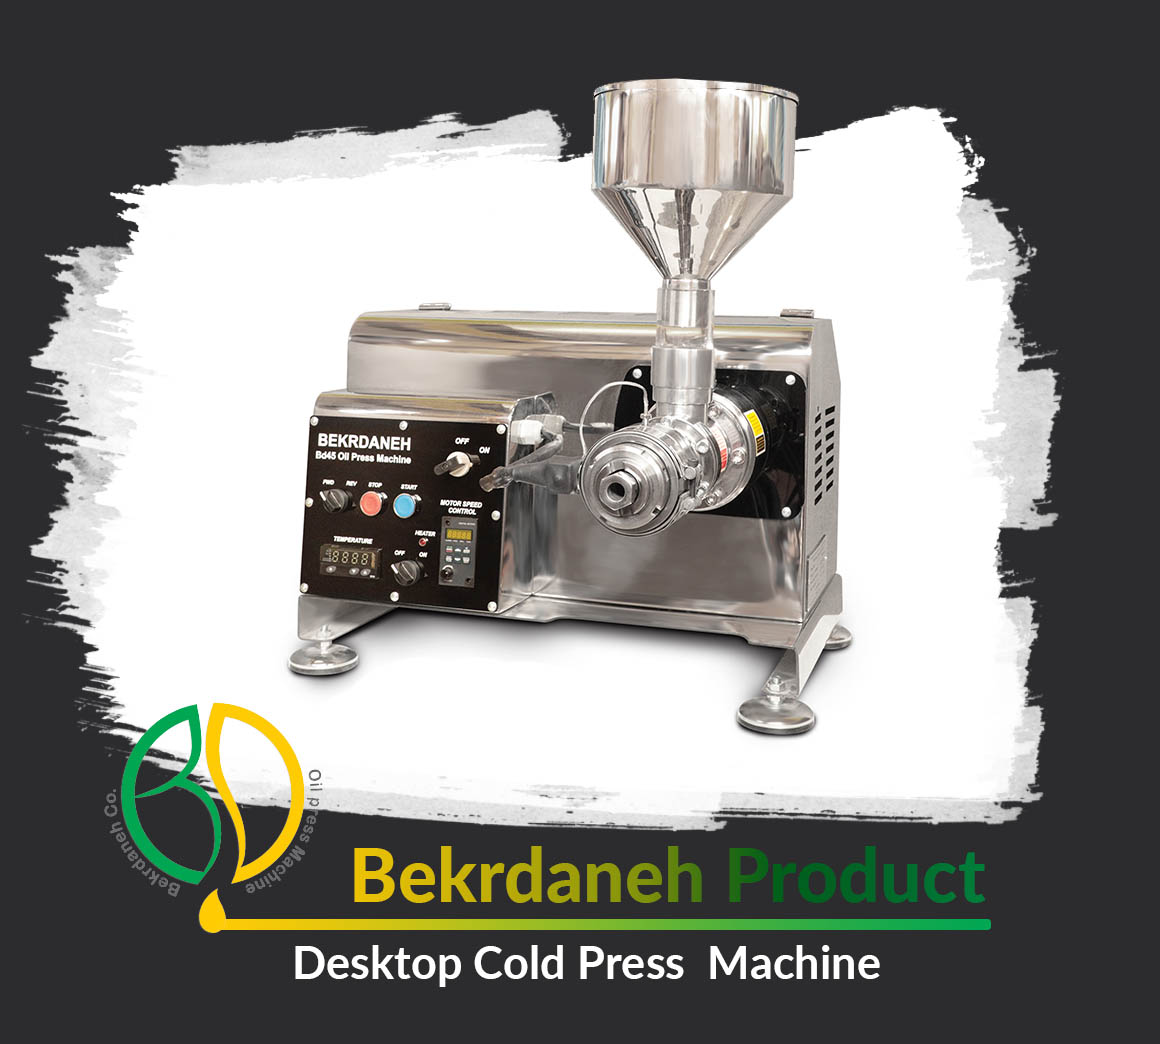 BD45 Desktop Cold Press Machine